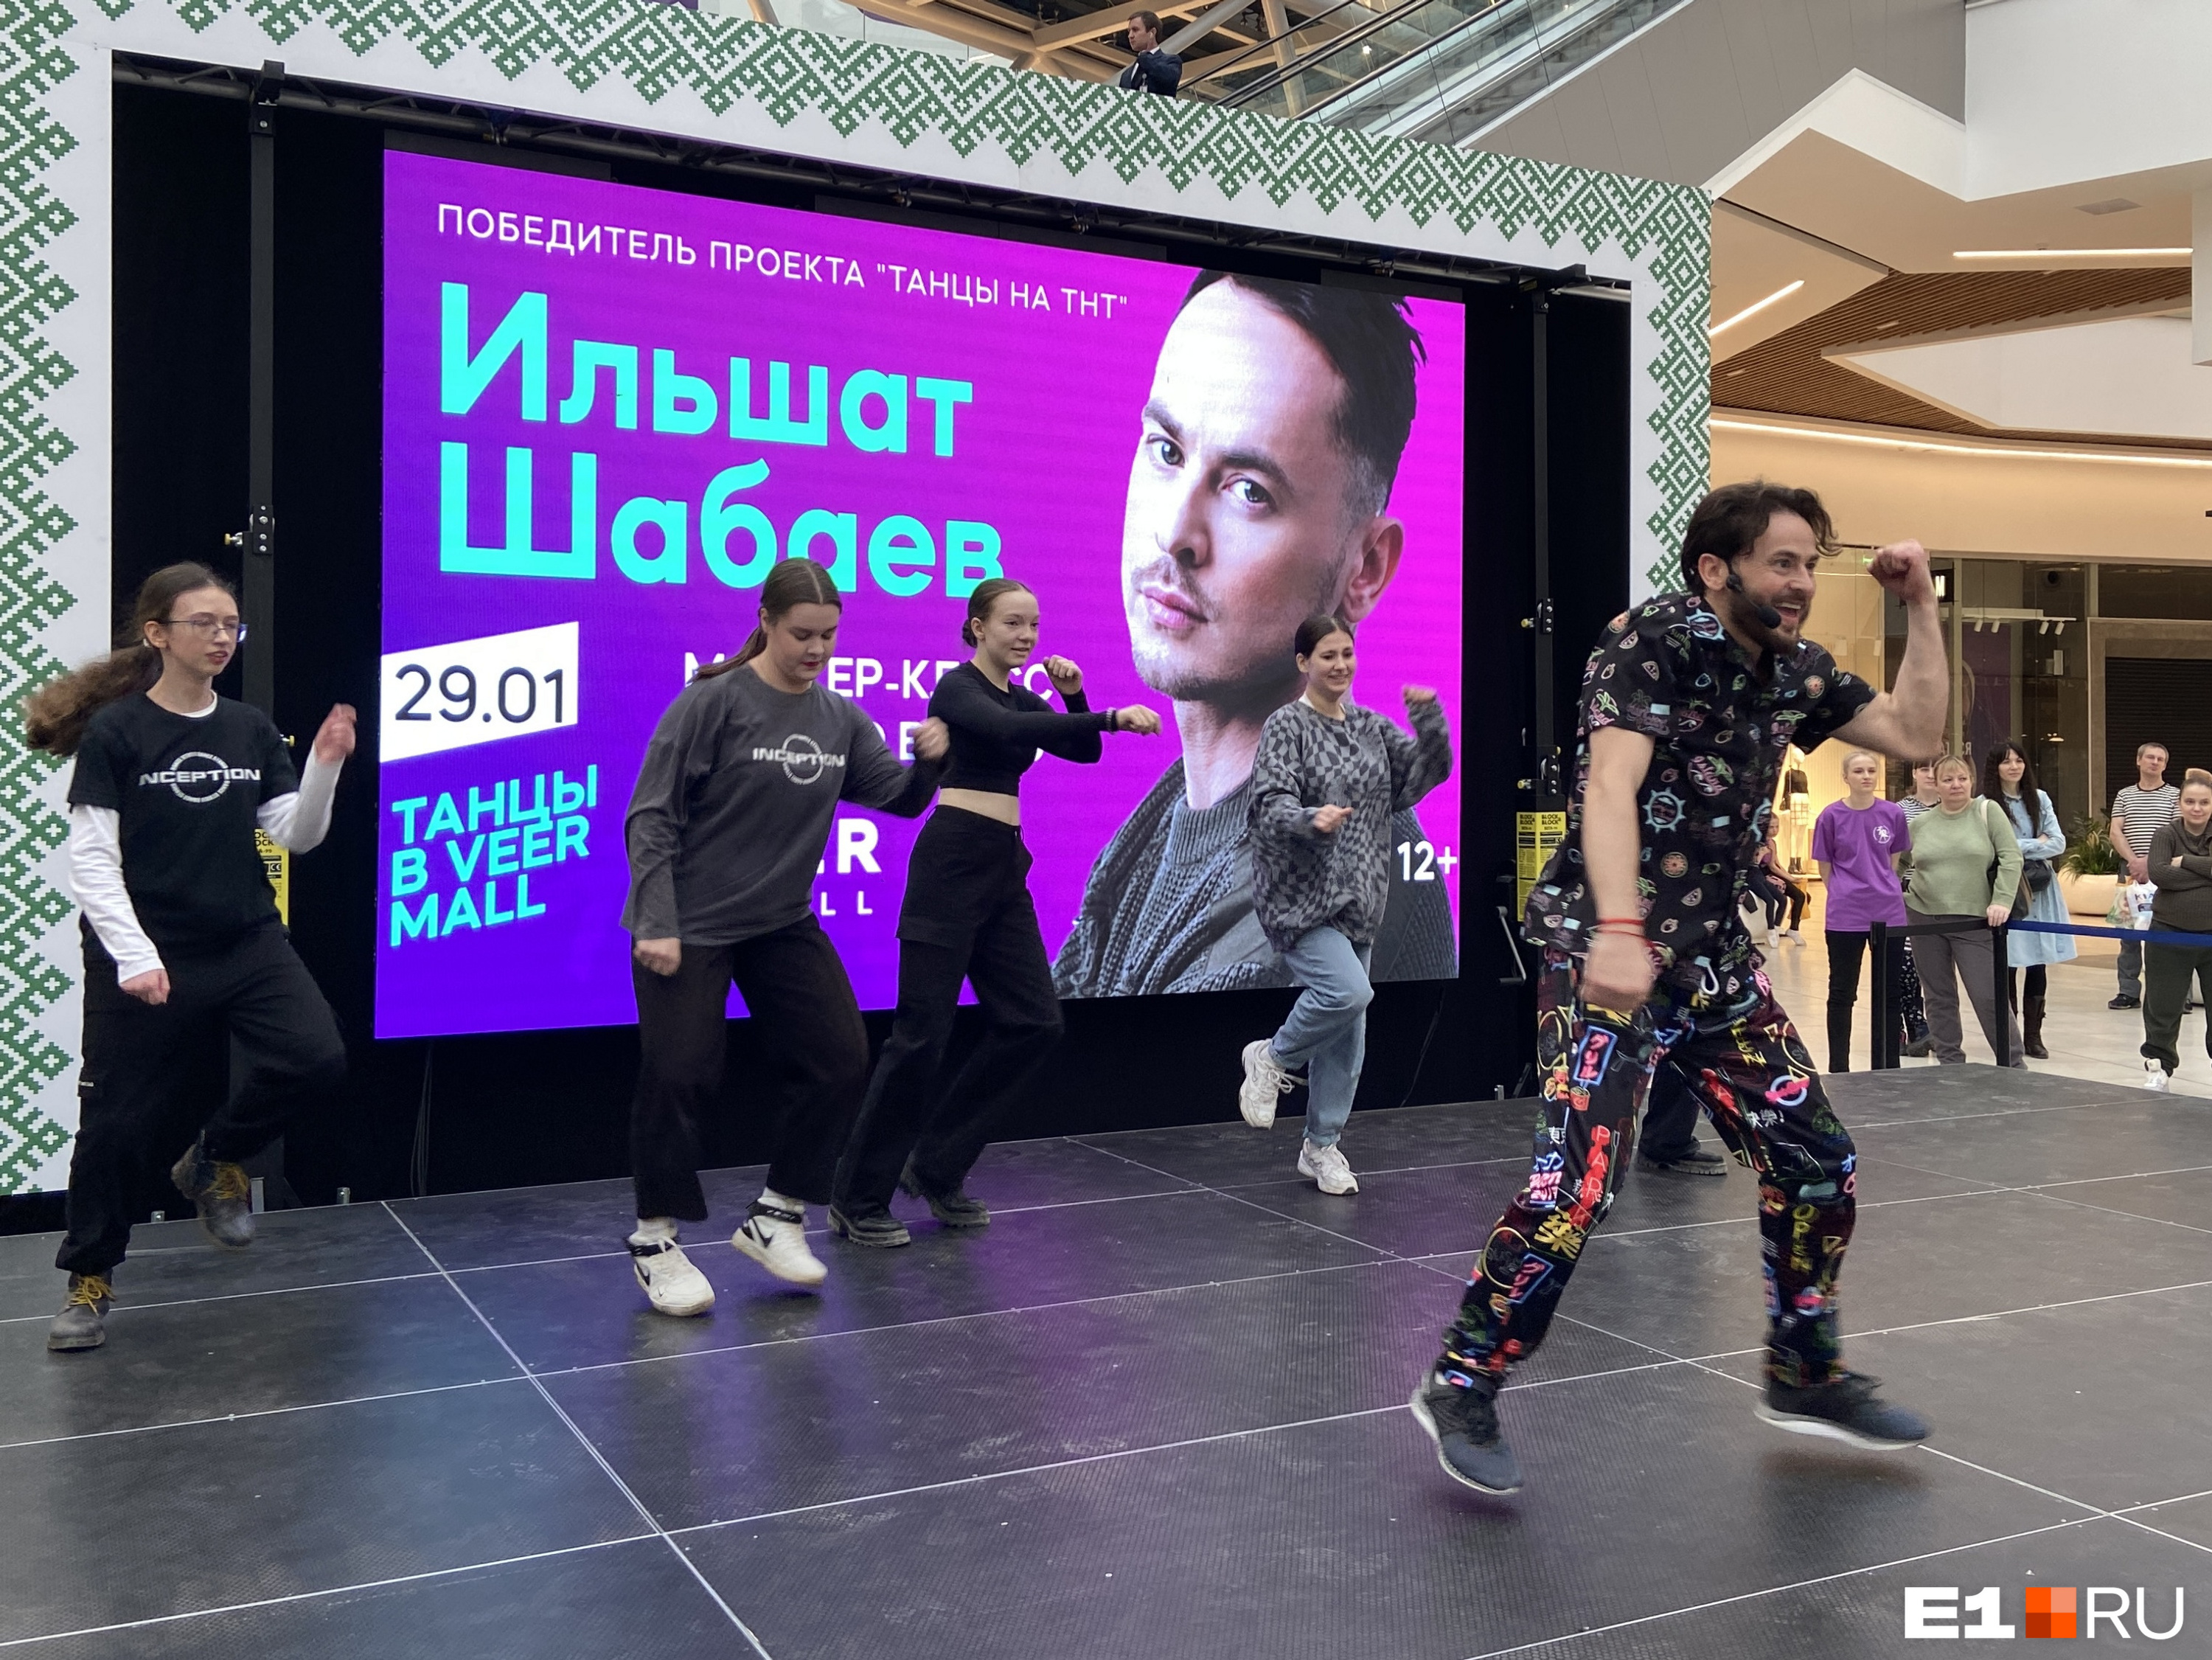 Победитель шоу на ТНТ заставил танцевать посетителей екатеринбургского торгового центра